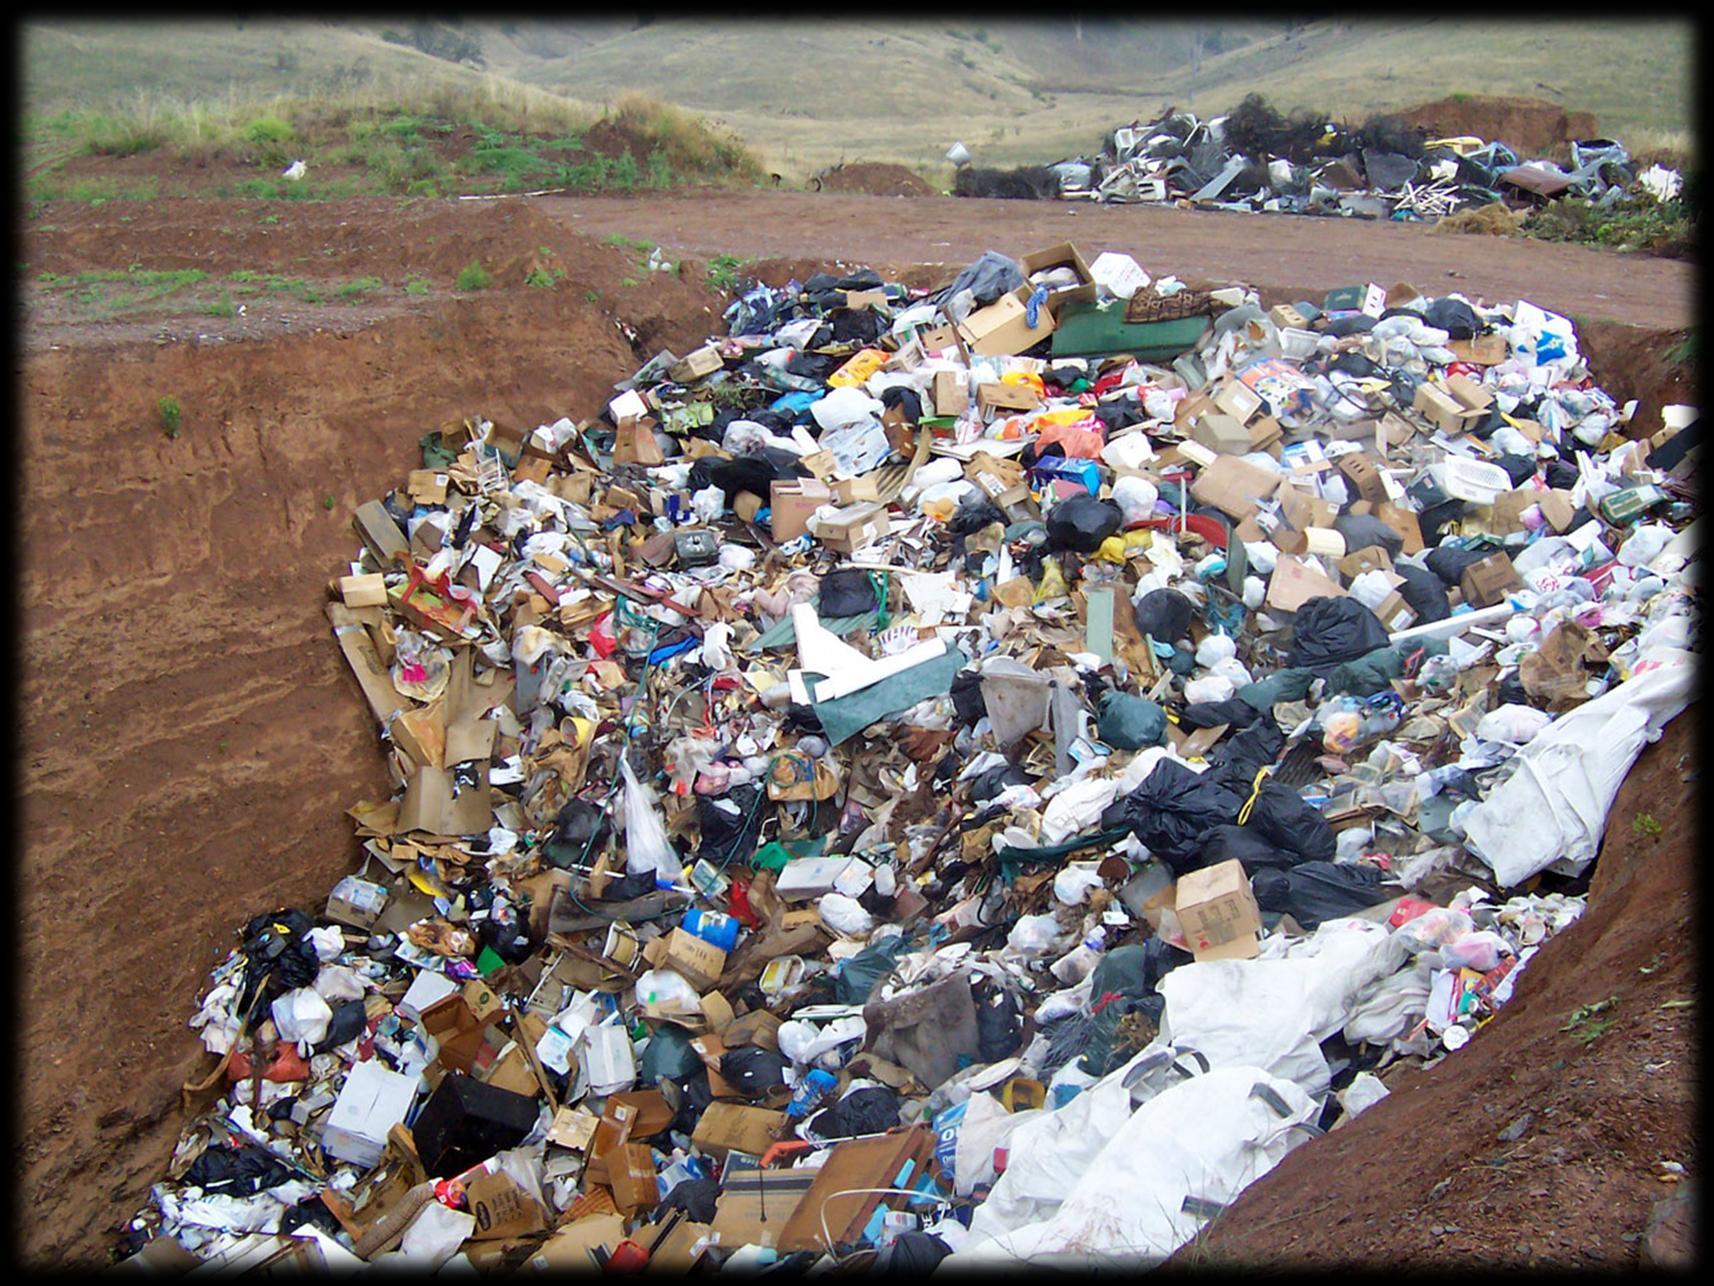 ATERROS SANITÁRIOS Os aterros são terrenos com buracos cavados no chão forrados com plástico ou argila onde o lixo recolhido na cidade é depositado; A decomposição da matéria